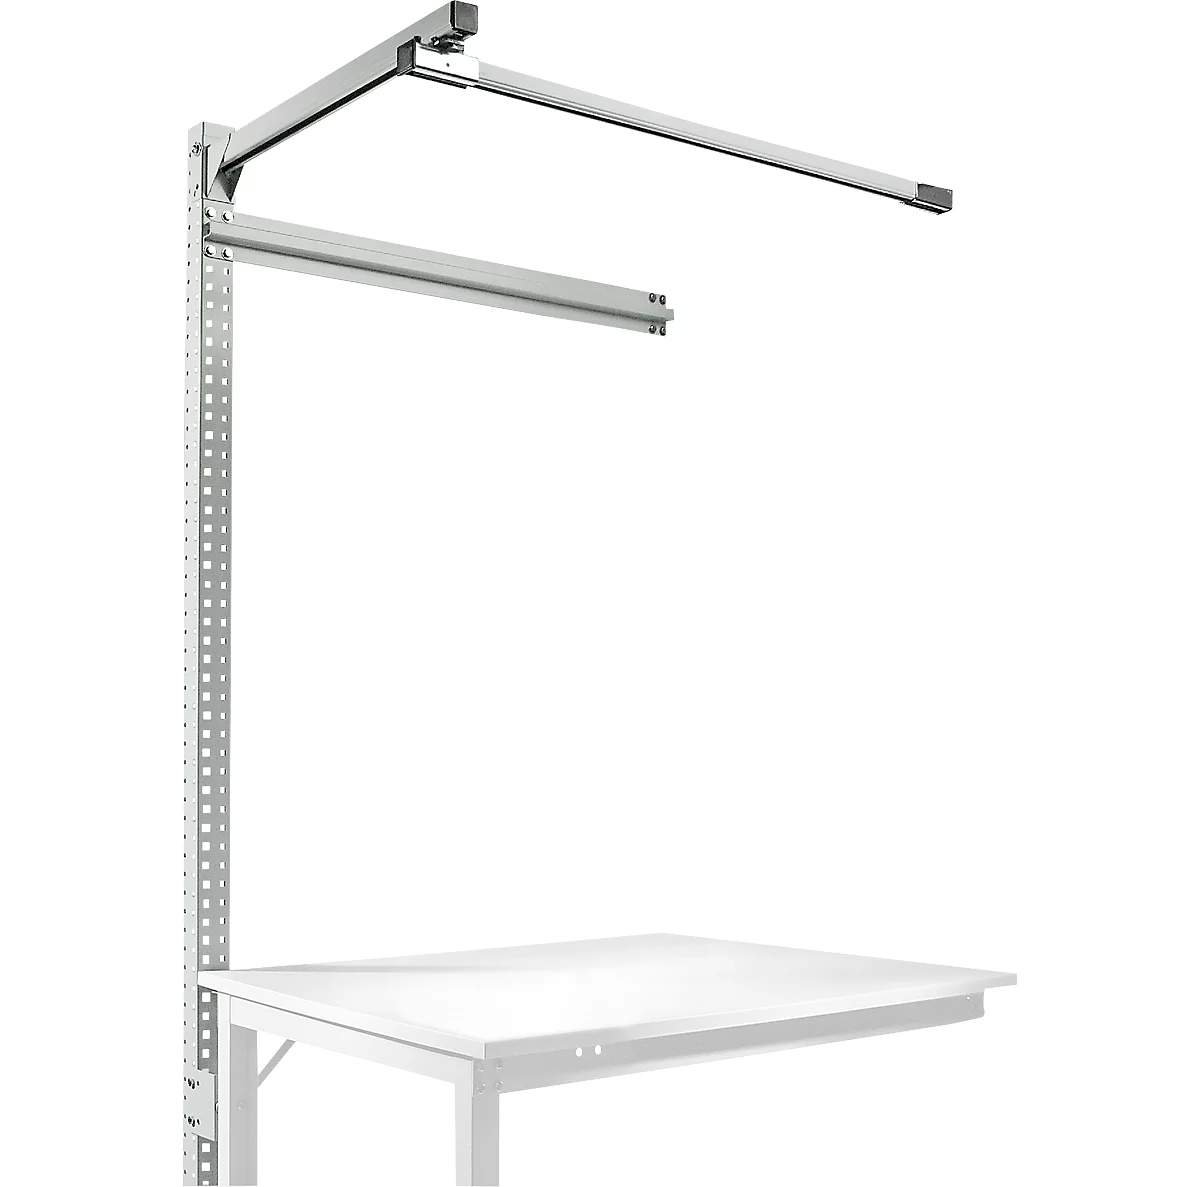 Estructura pórtica adicional con brazo saliente, Mesa de extensión STANDARD mesa de trabajo/banco de trabajo UNIVERSAL/PROFI, 1250 mm, gris luminoso